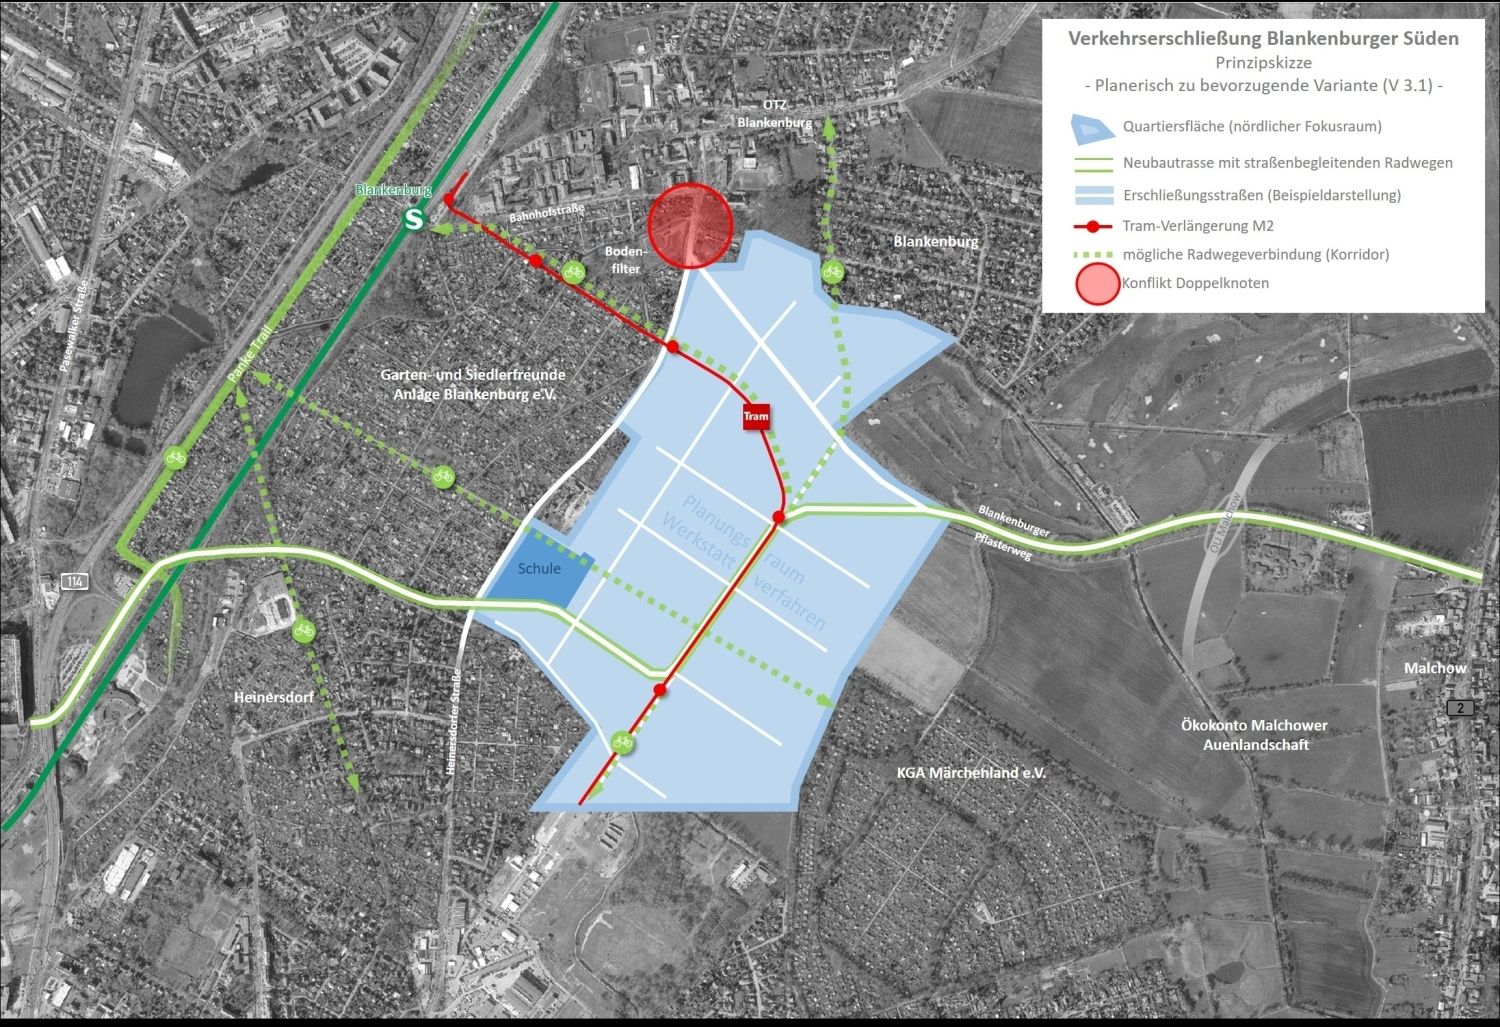 Bildvergrößerung: Abbildung 1: Planerisch zu bevorzugende Variante der Verkehrserschließung Blankenburg